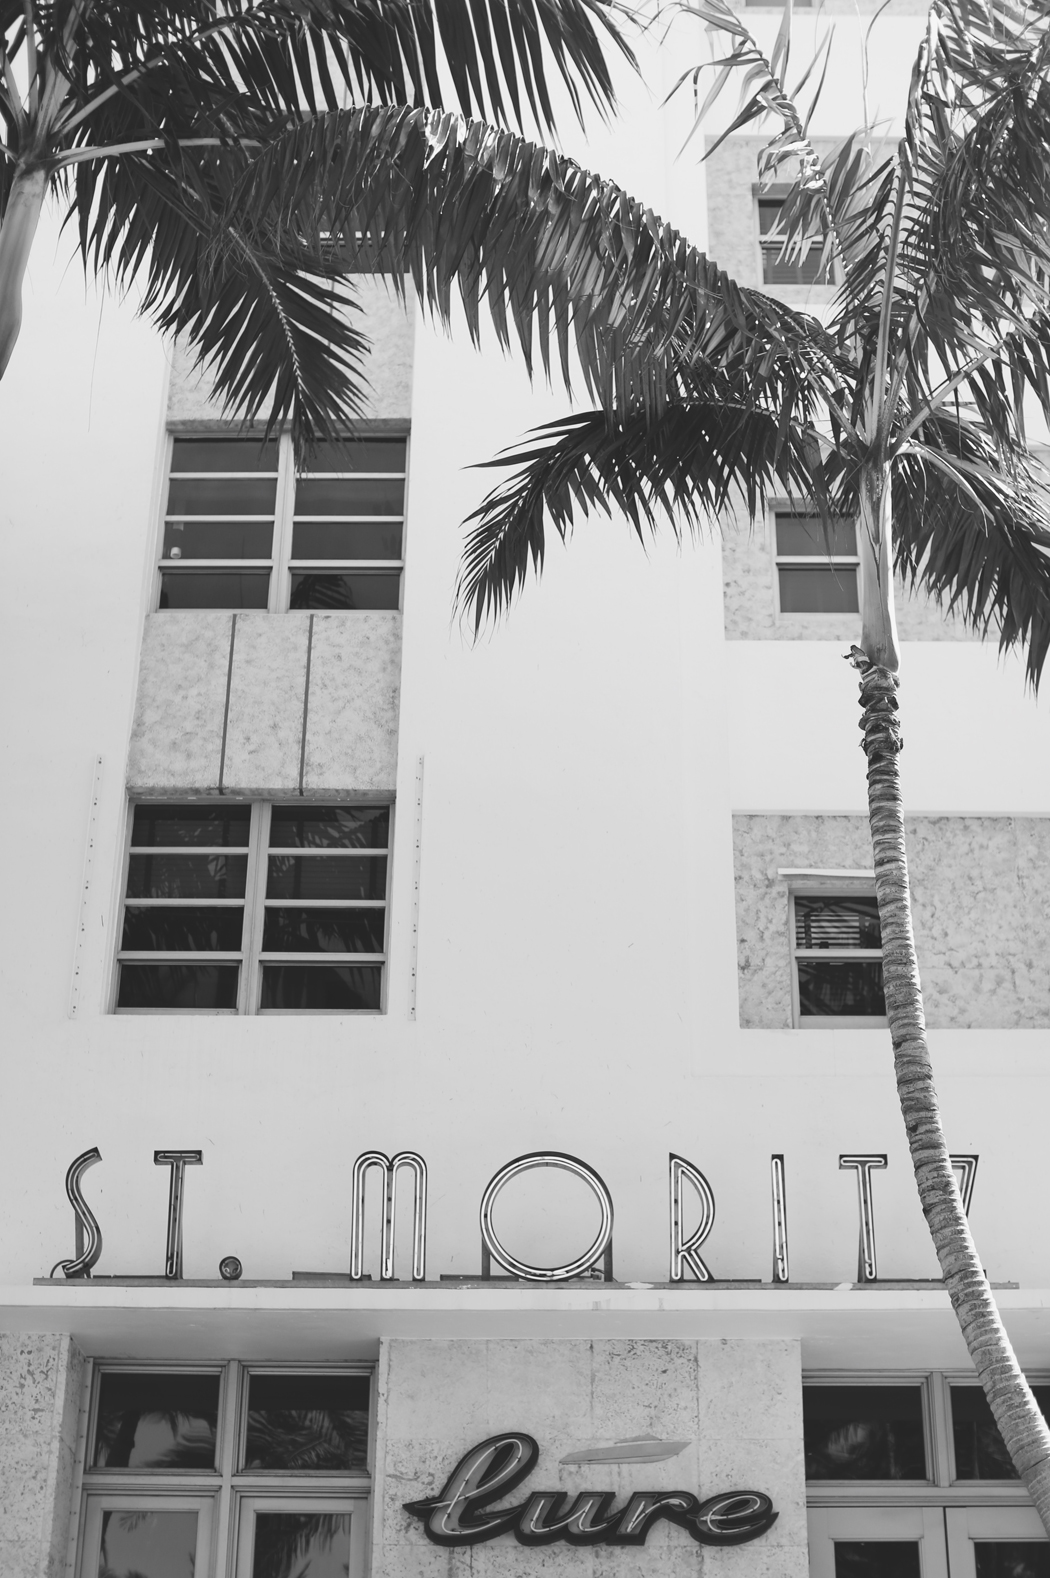 THE DASHING RIDER - Miami Architecture